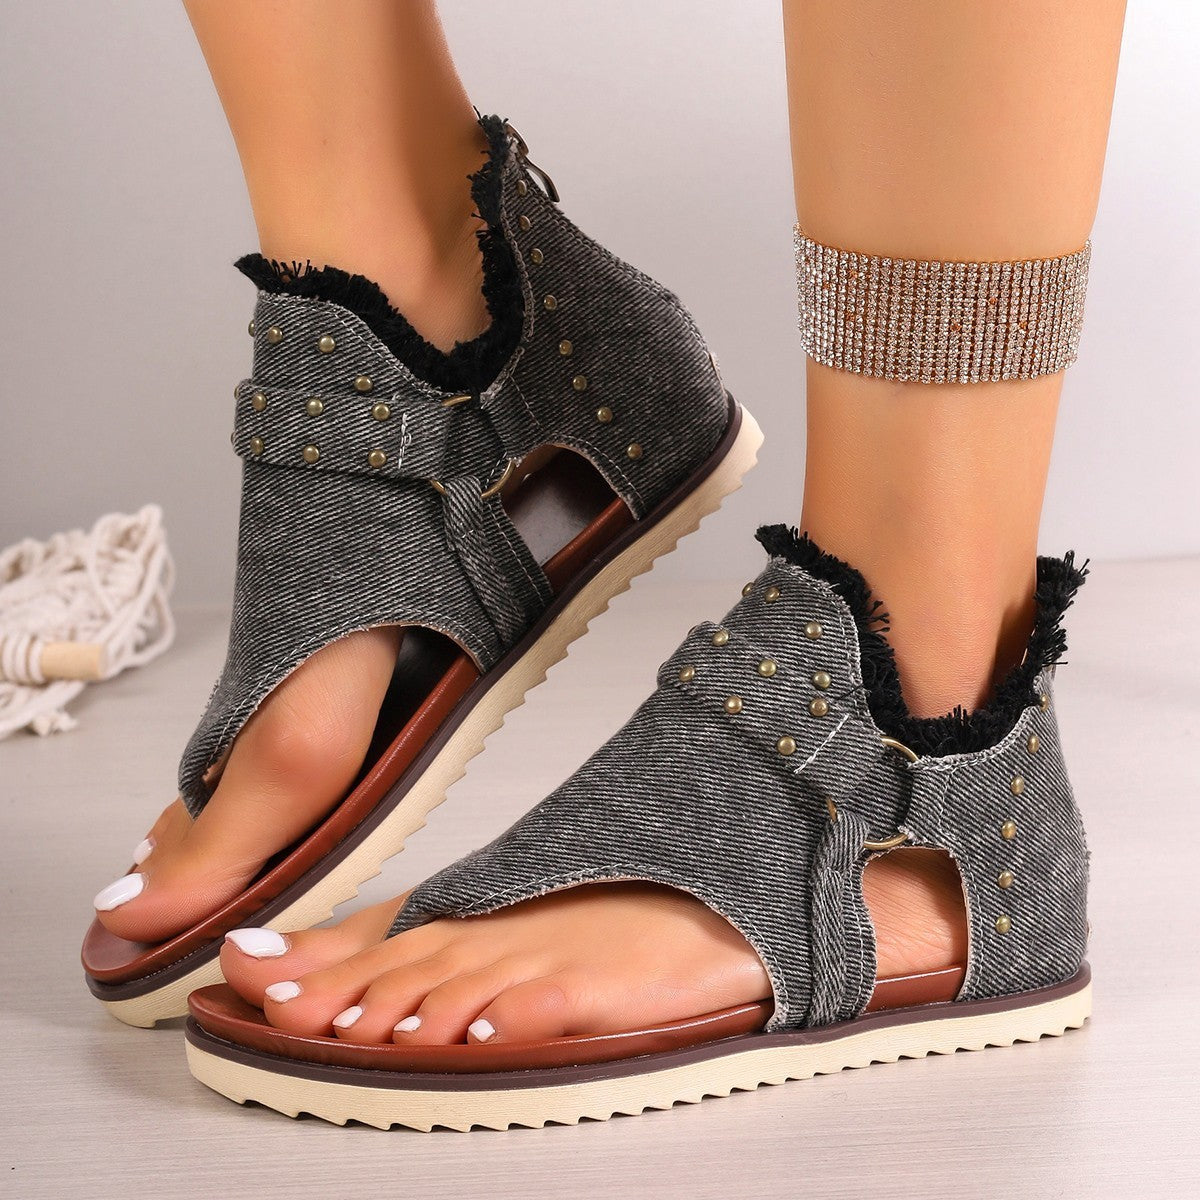 Denim Thong Sandals With Rear Zipper Summer Retro Beach Flat Shoes For Women